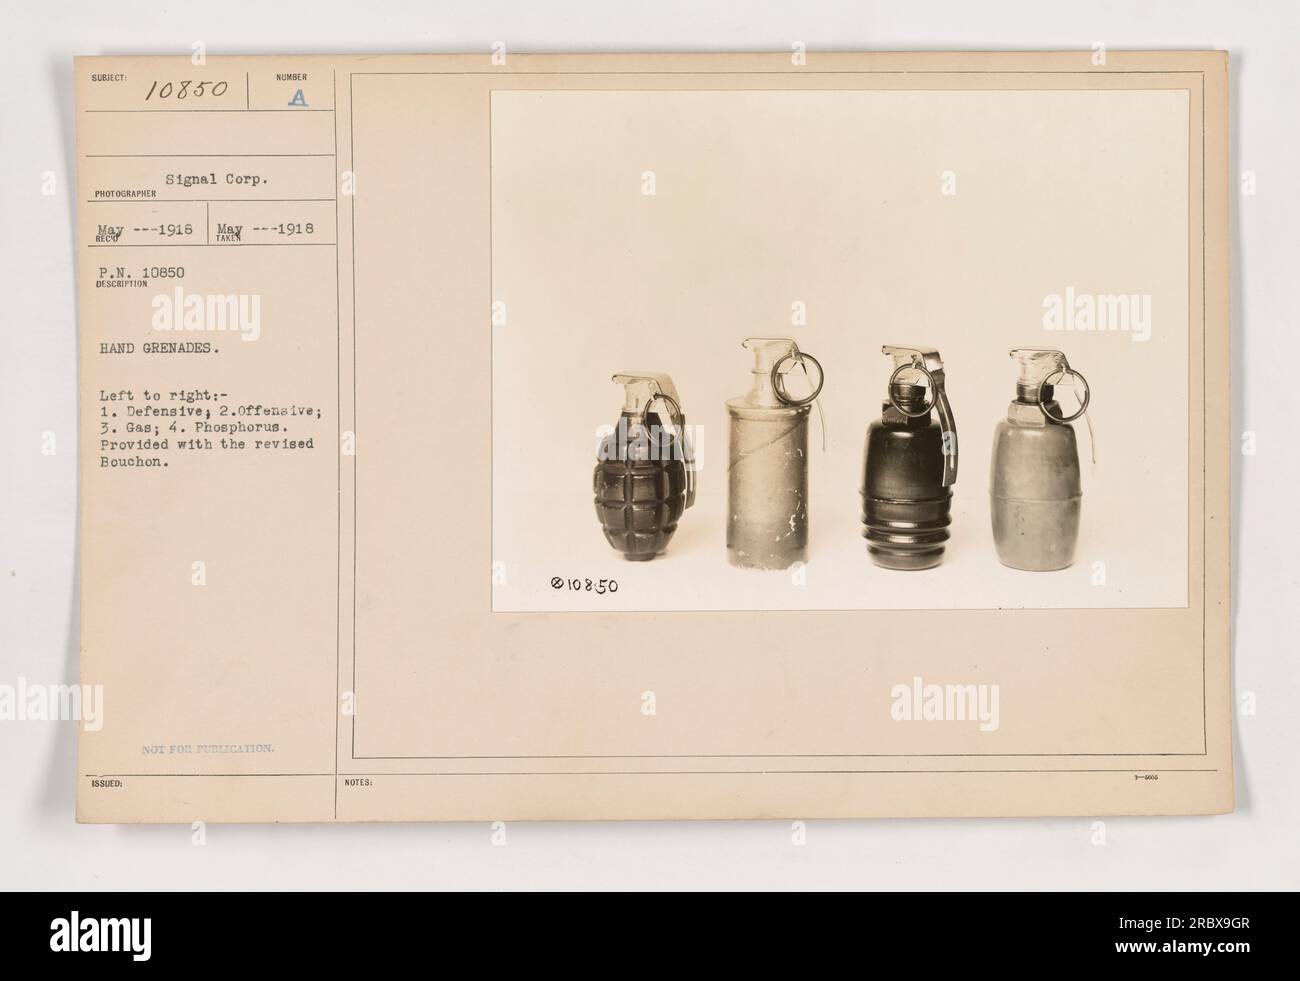 L'immagine mostra quattro tipi di granate a mano e il relativo complessivo fusibile, come descritto da Signal Corp Le granate a mano sono etichettate da sinistra a destra: 1. Difensivo; 2. Offensivo; 3. Gas; 4. Fosforo. Le granate sono state emesse nel maggio 1916 e hanno il Bouchon rivisto. Questa foto riporta la notazione "NON PER LA PUBBLICAZIONE". Foto Stock